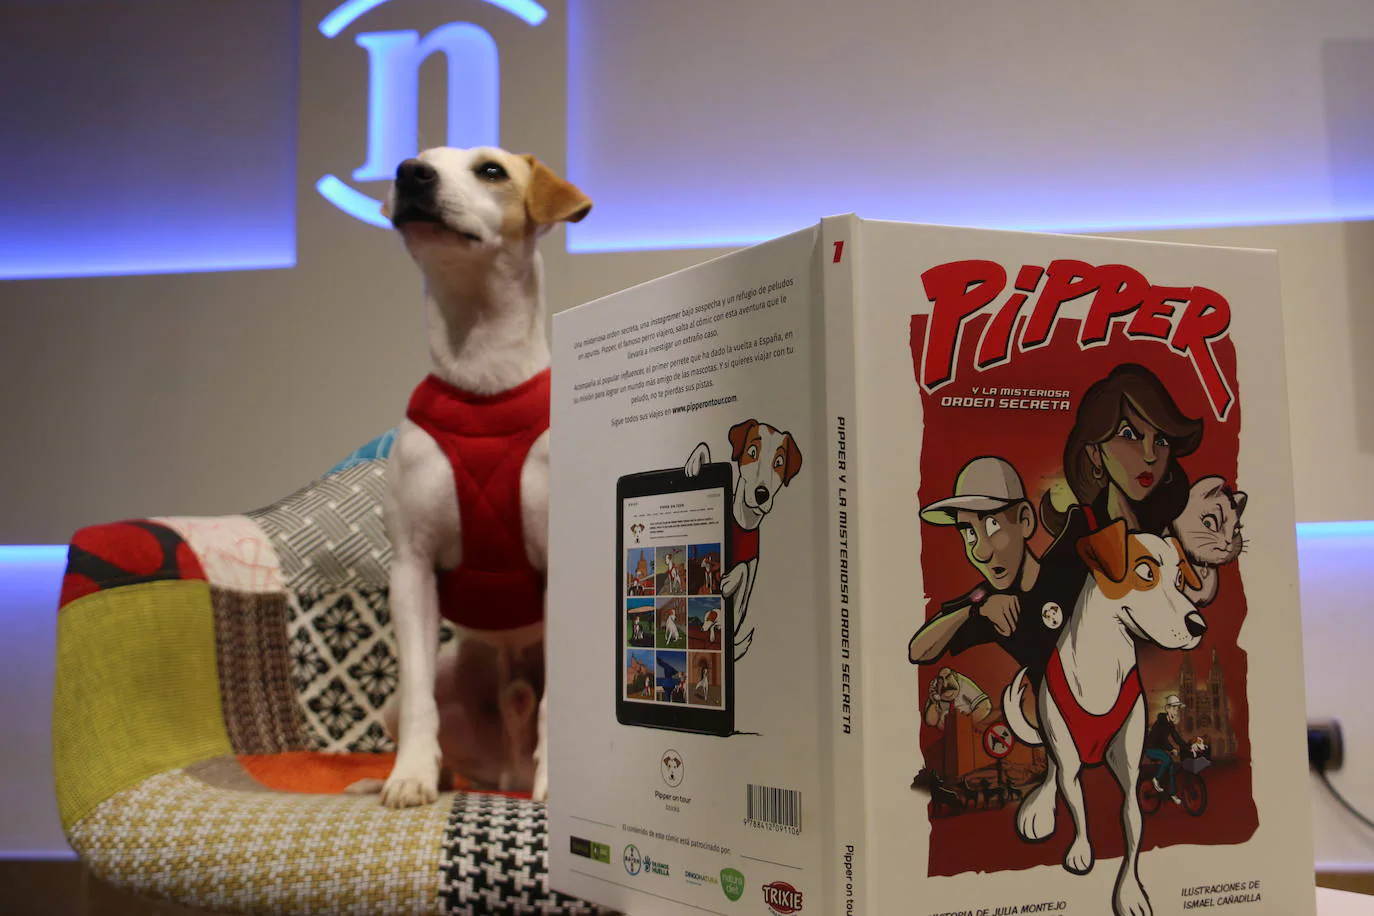 El perro aventurero más famoso de España ha acudido a la redacción para presentar el nuevo comic en el que se convierte en protagonista de una historia.